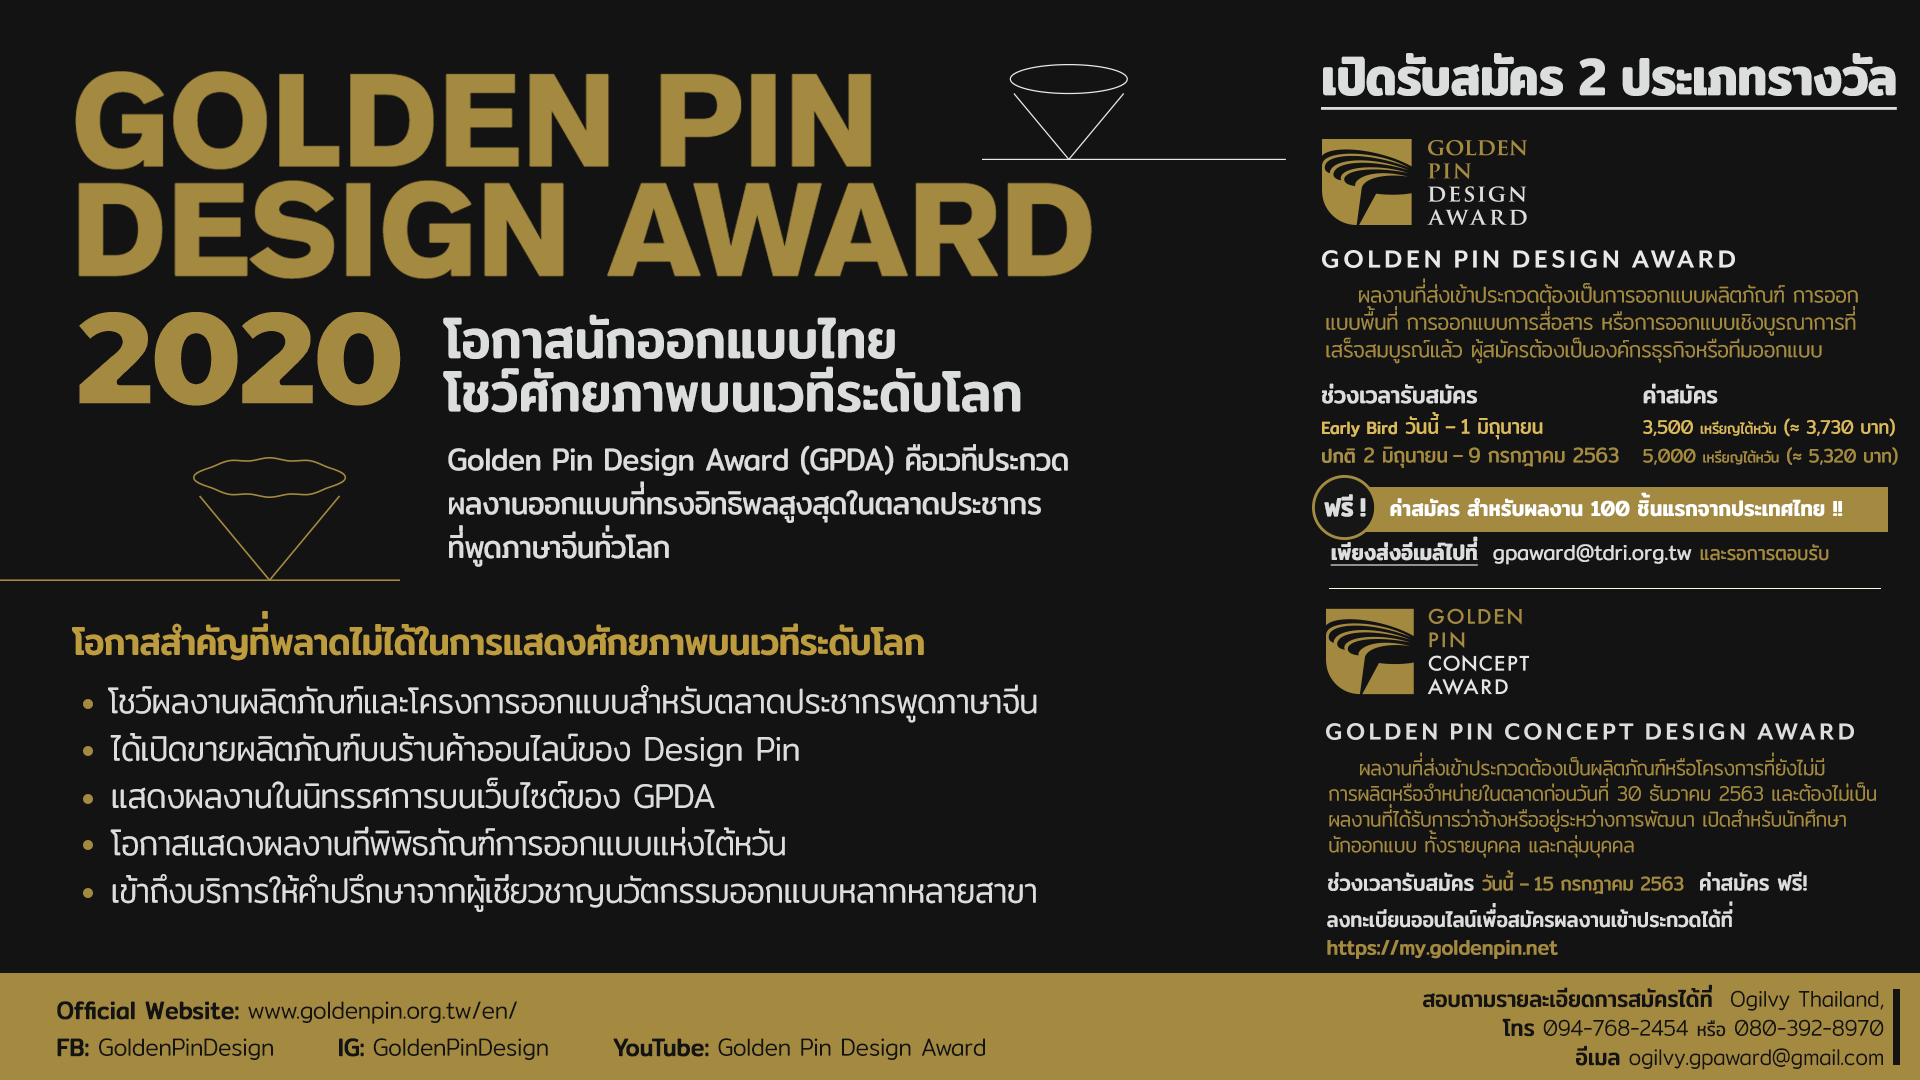 Golden Pin Design Award 2020 เปิดรับสมัครผลงาน สมัครฟรีสำหรับ 100 ผลงานแรกที่ส่งเข้าประกวด